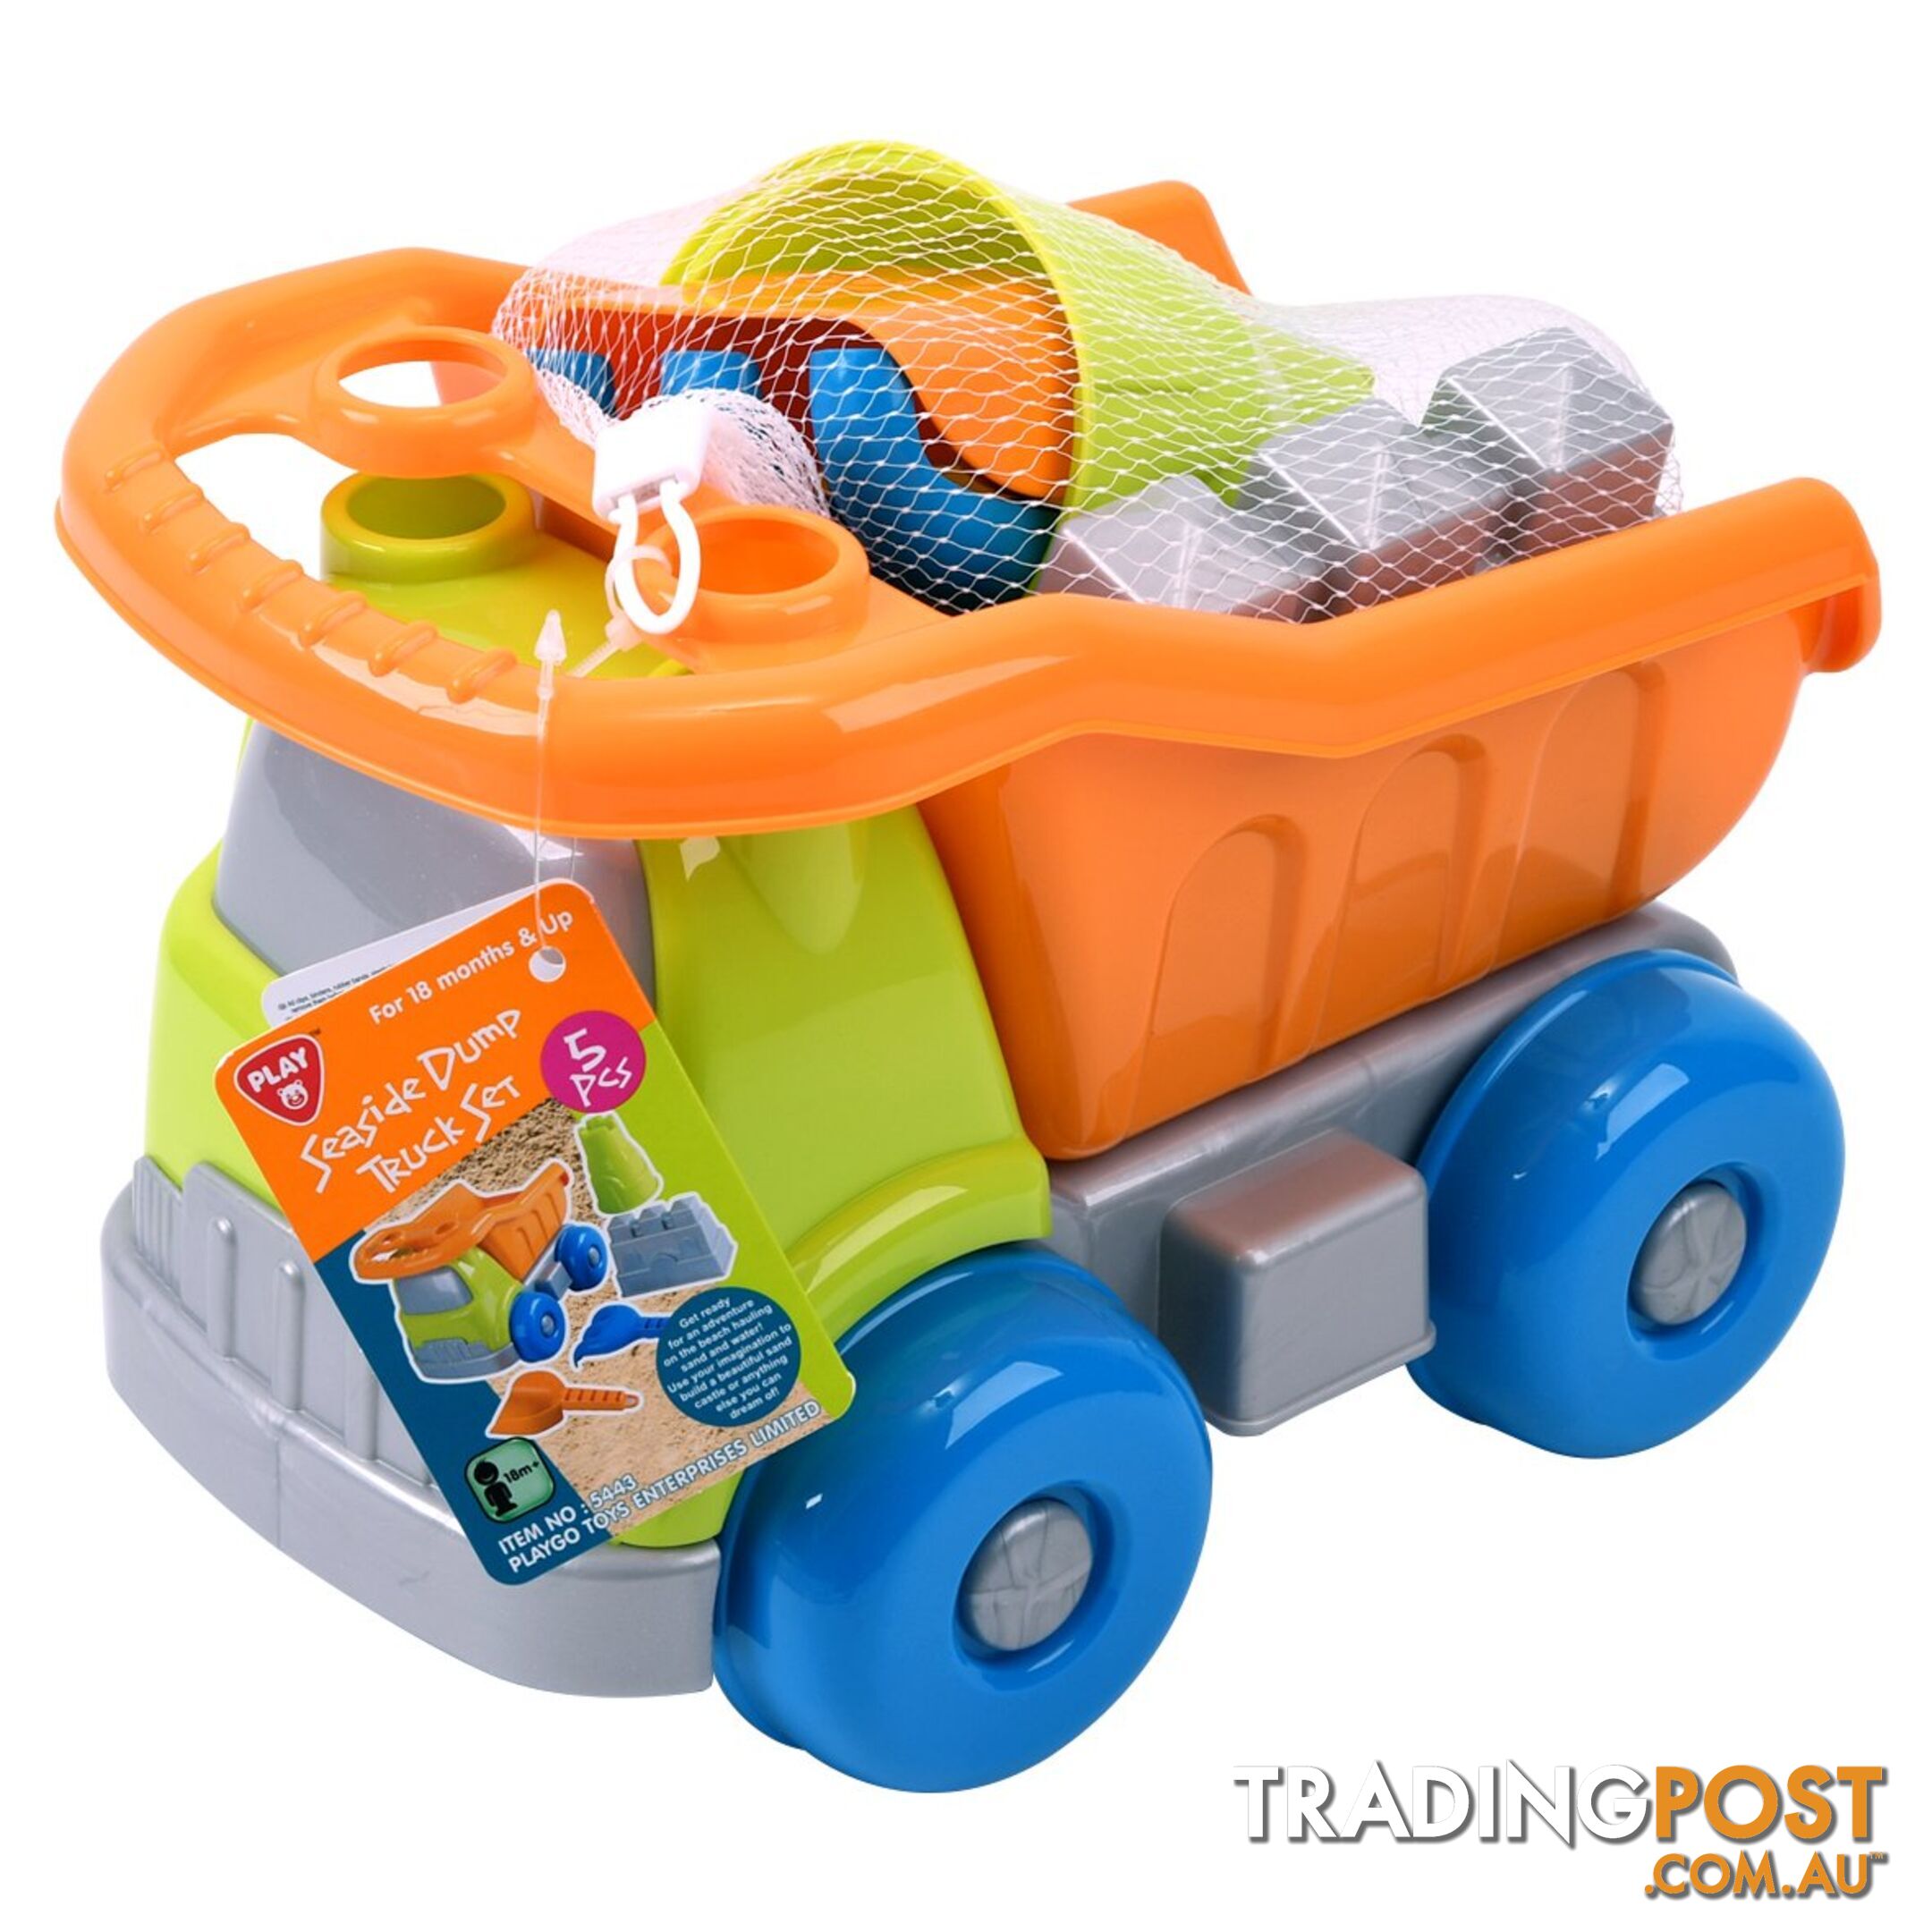 Seaside Dump Truck Set Playgo Toys Ent. Ltd Art65506 - 4892401054432